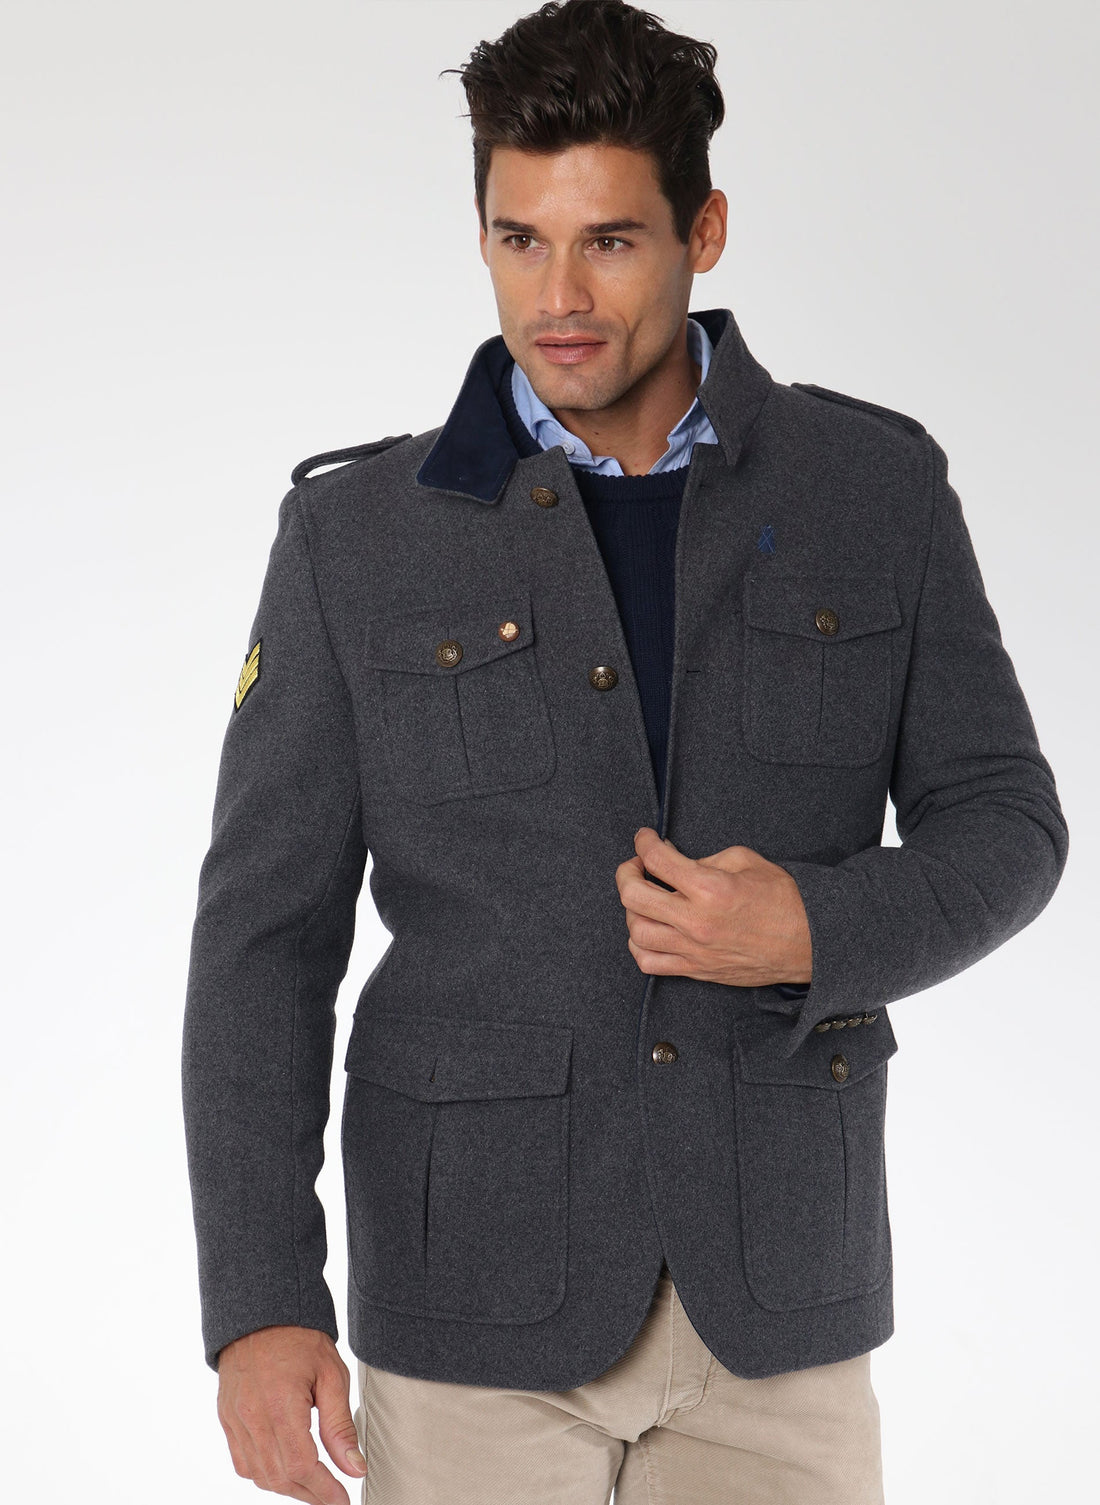 Austrian Jacket Man Gray